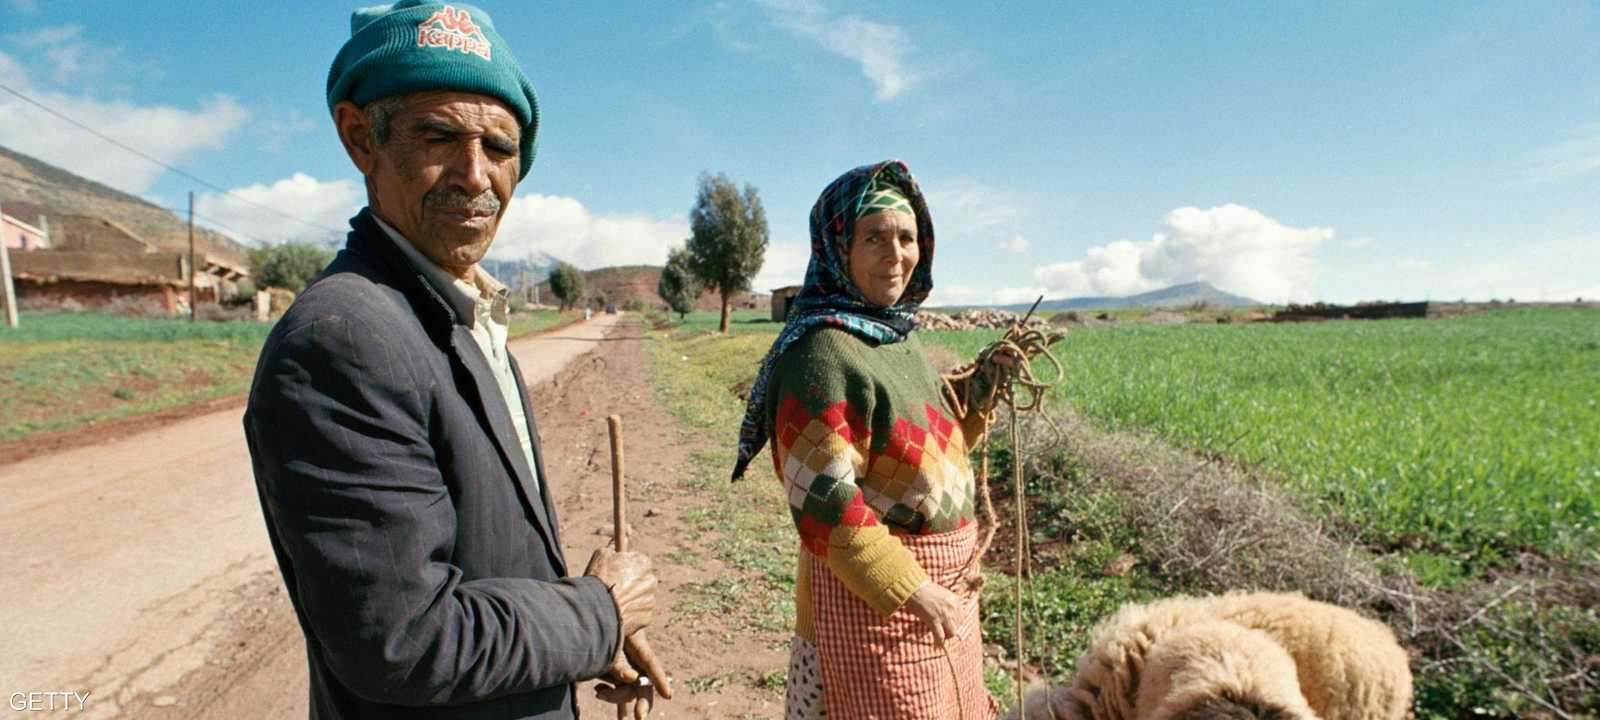 القطاع الزراعي يسهم بـ 14 من الناتج المحلي في المغرب